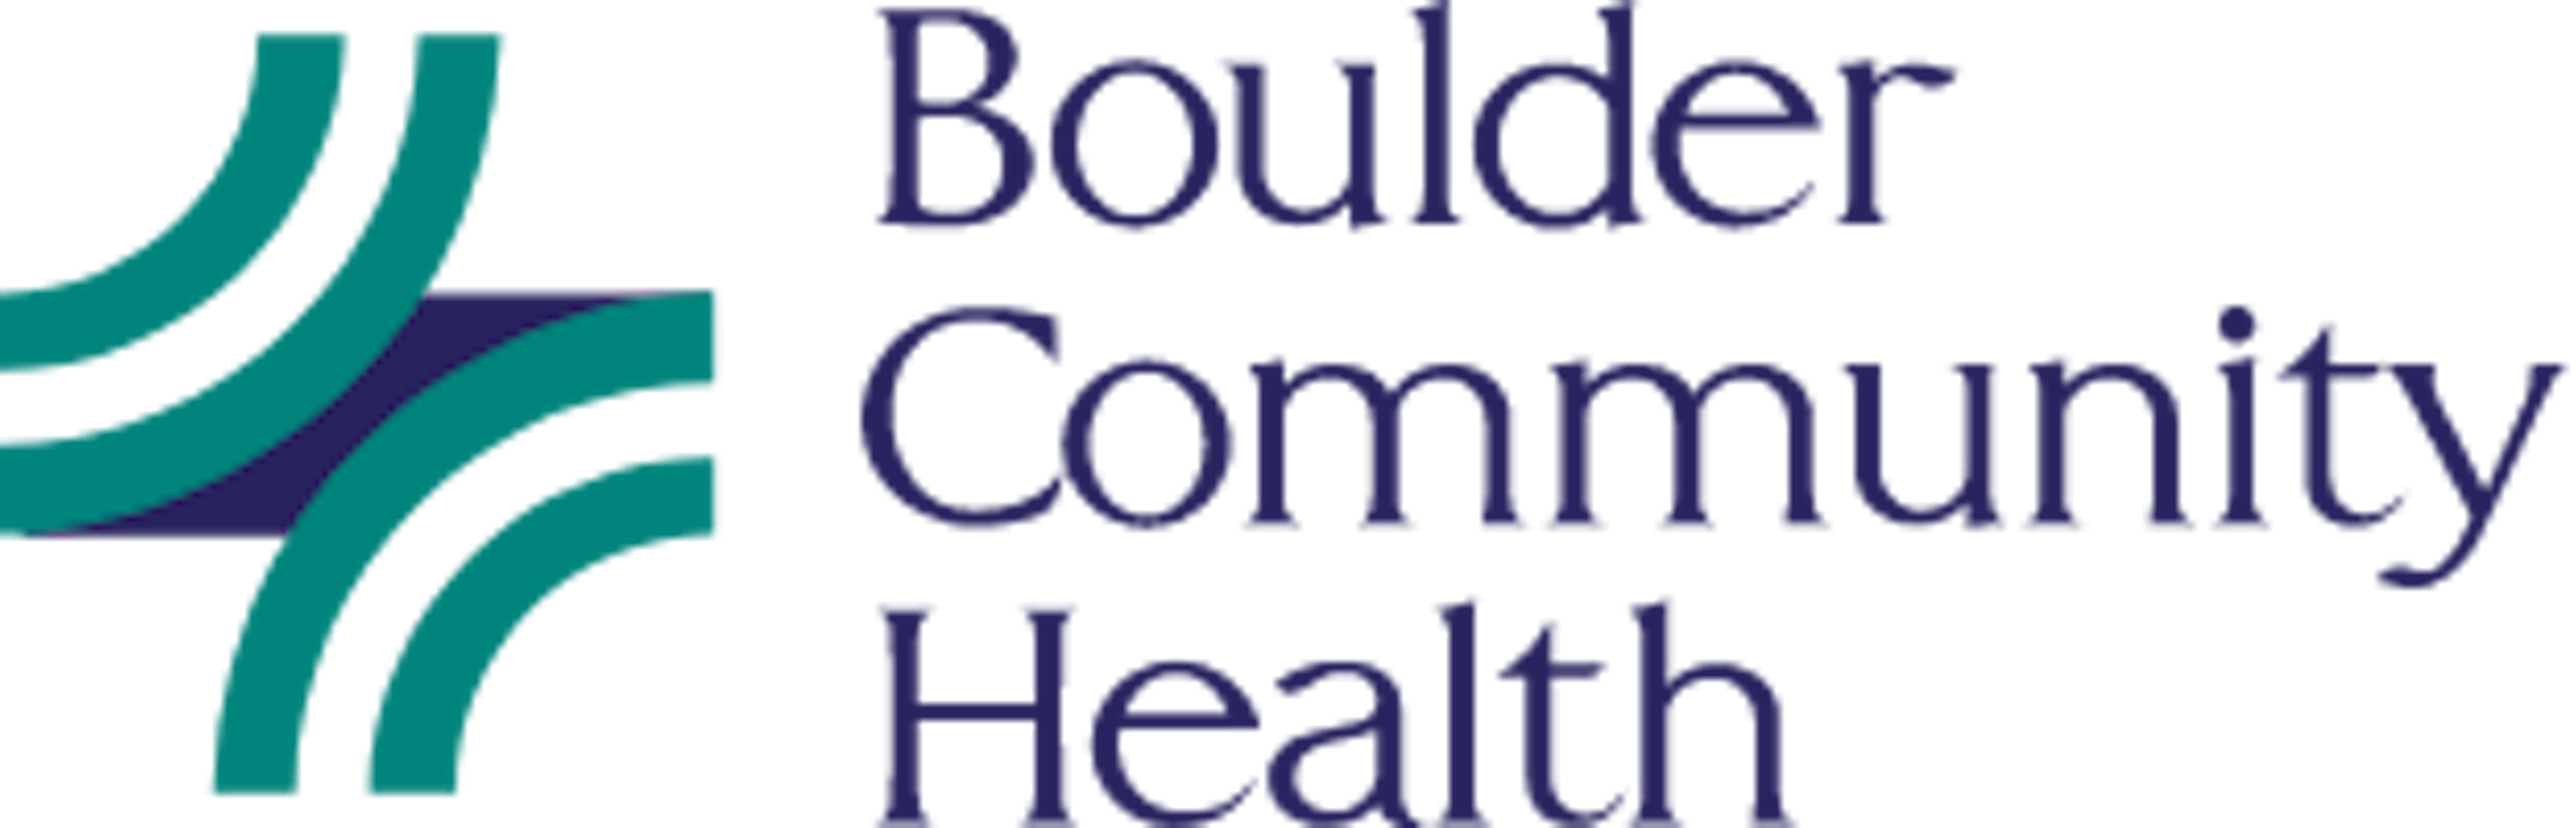 Bch Logo